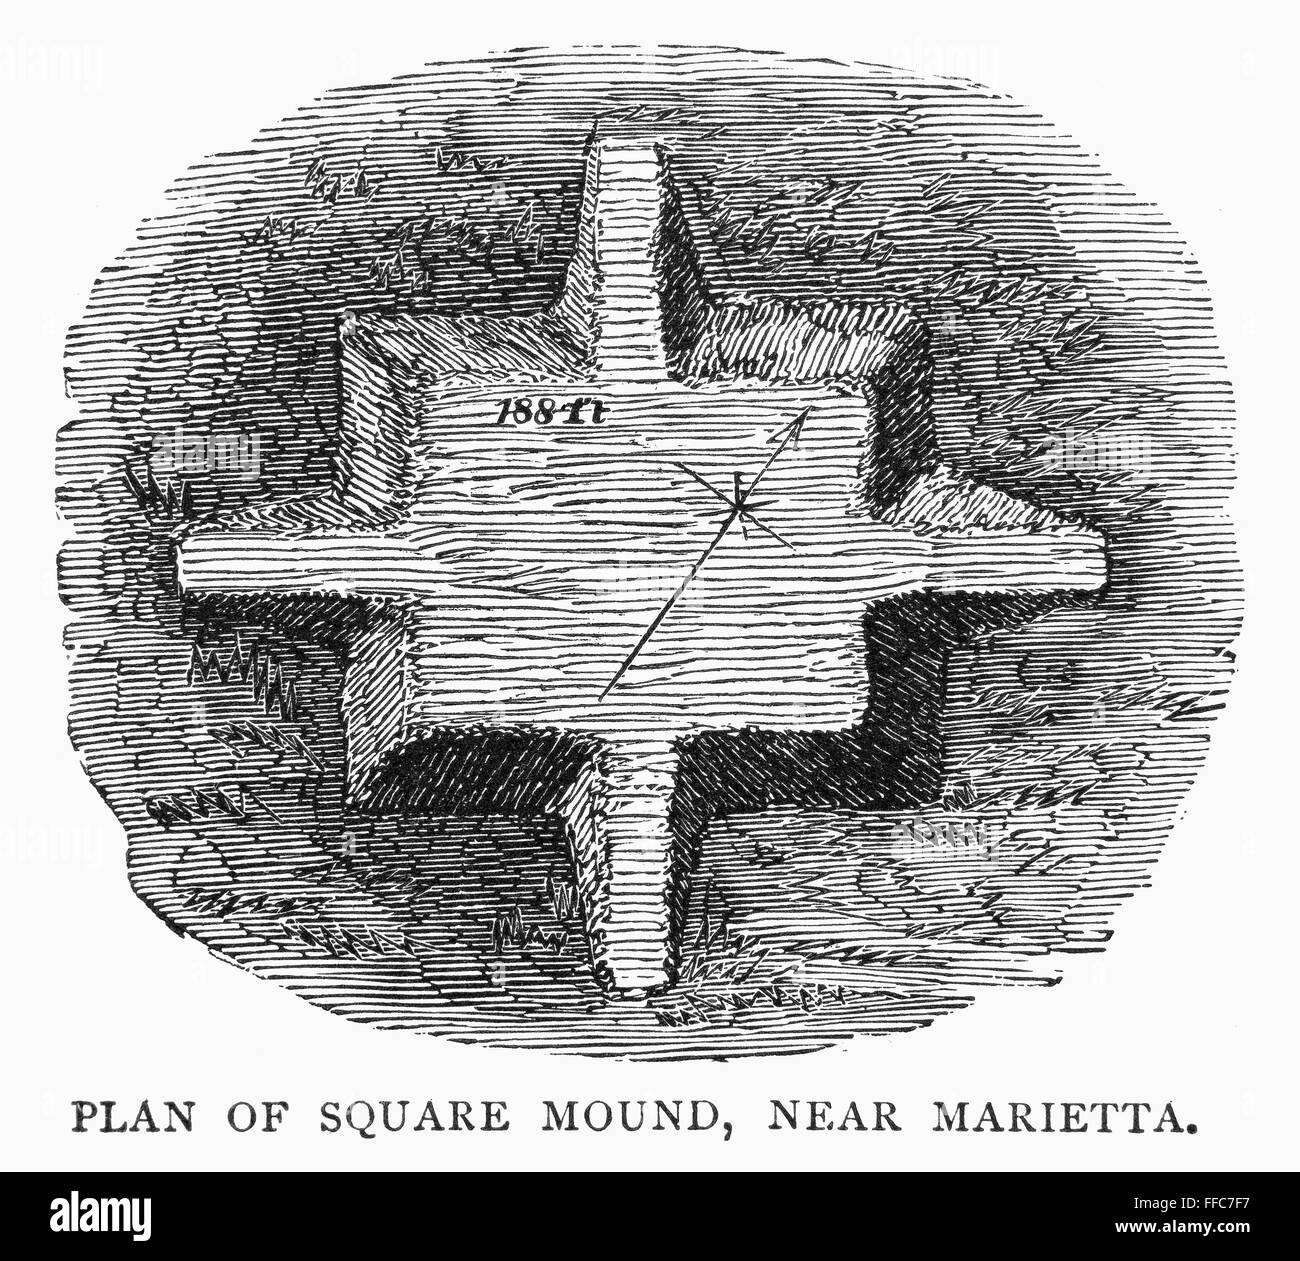 OHIO: PREHISTORIC MOUND. /nPlan of pre-Columbian square mound near Marietta, Ohio. Stock Photo